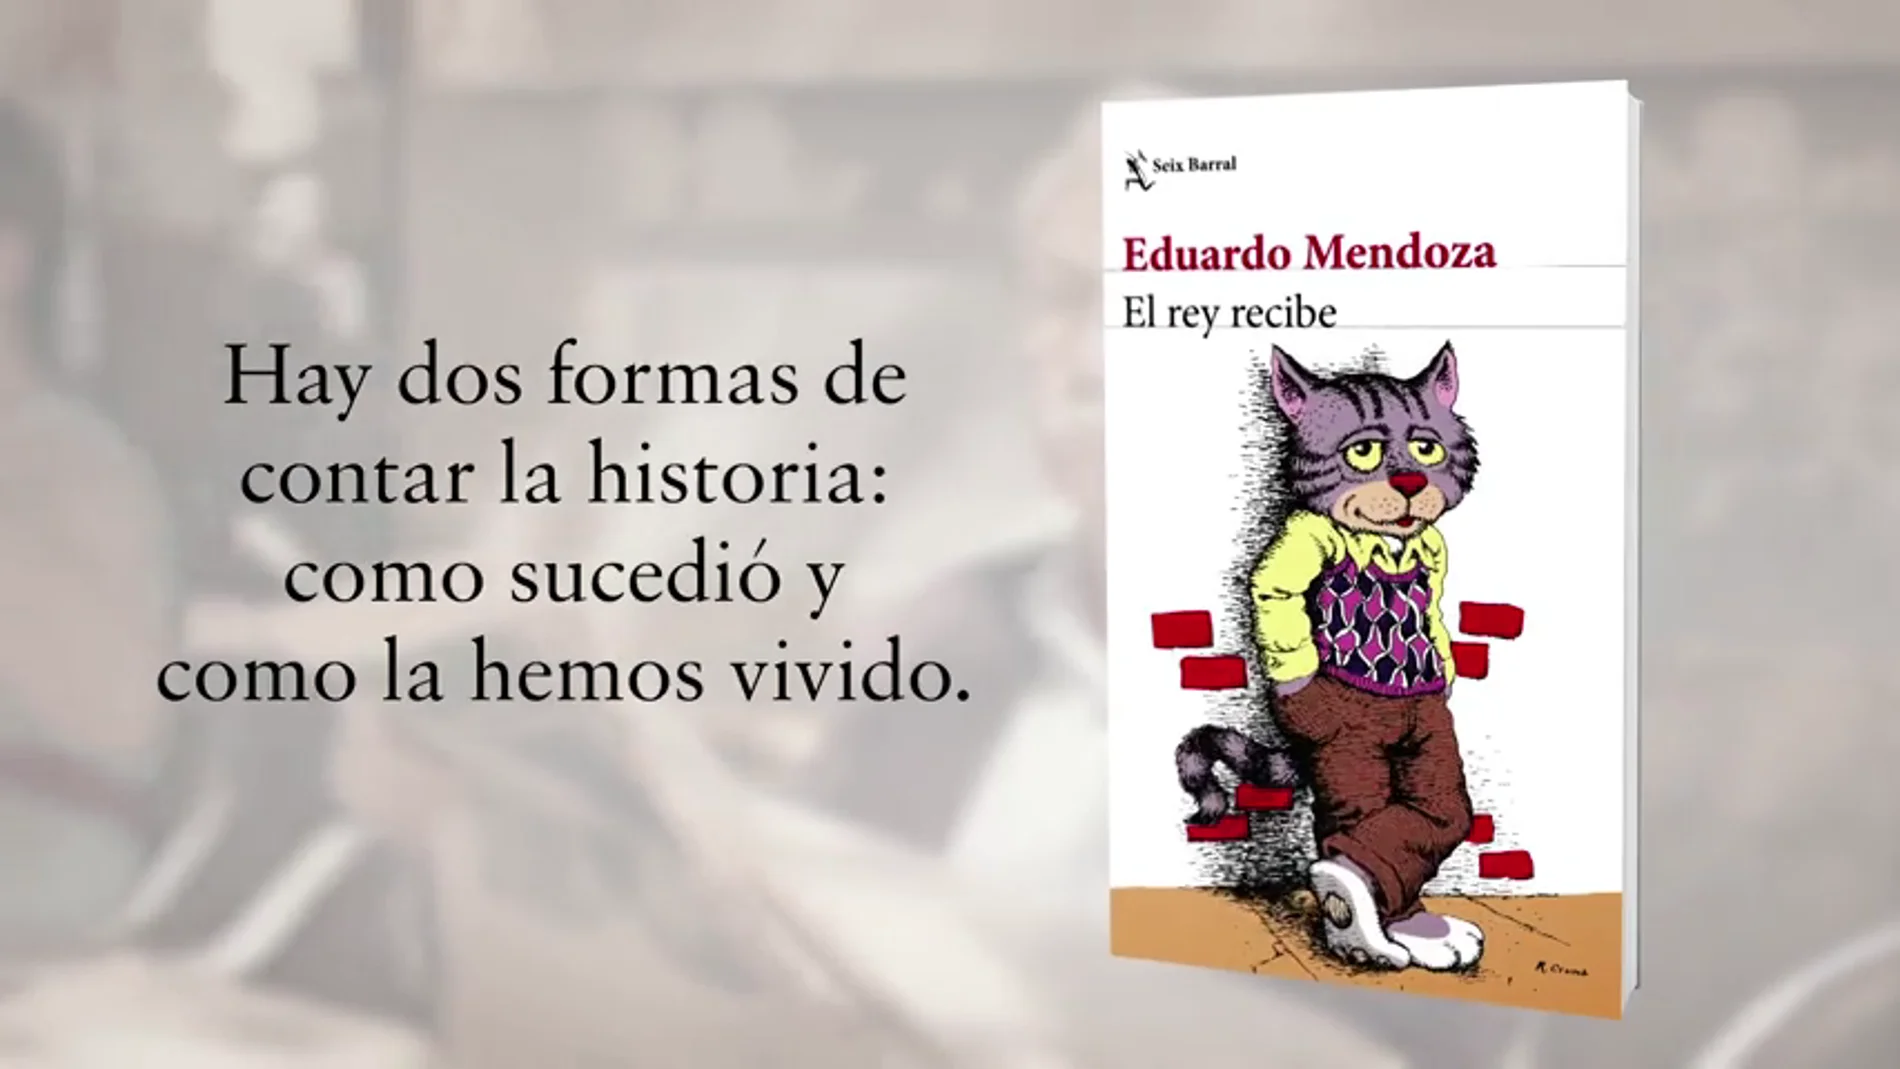 Eduardo Mendoza comienza una trilogía sobre sus vivencias en 'El rey recibe'